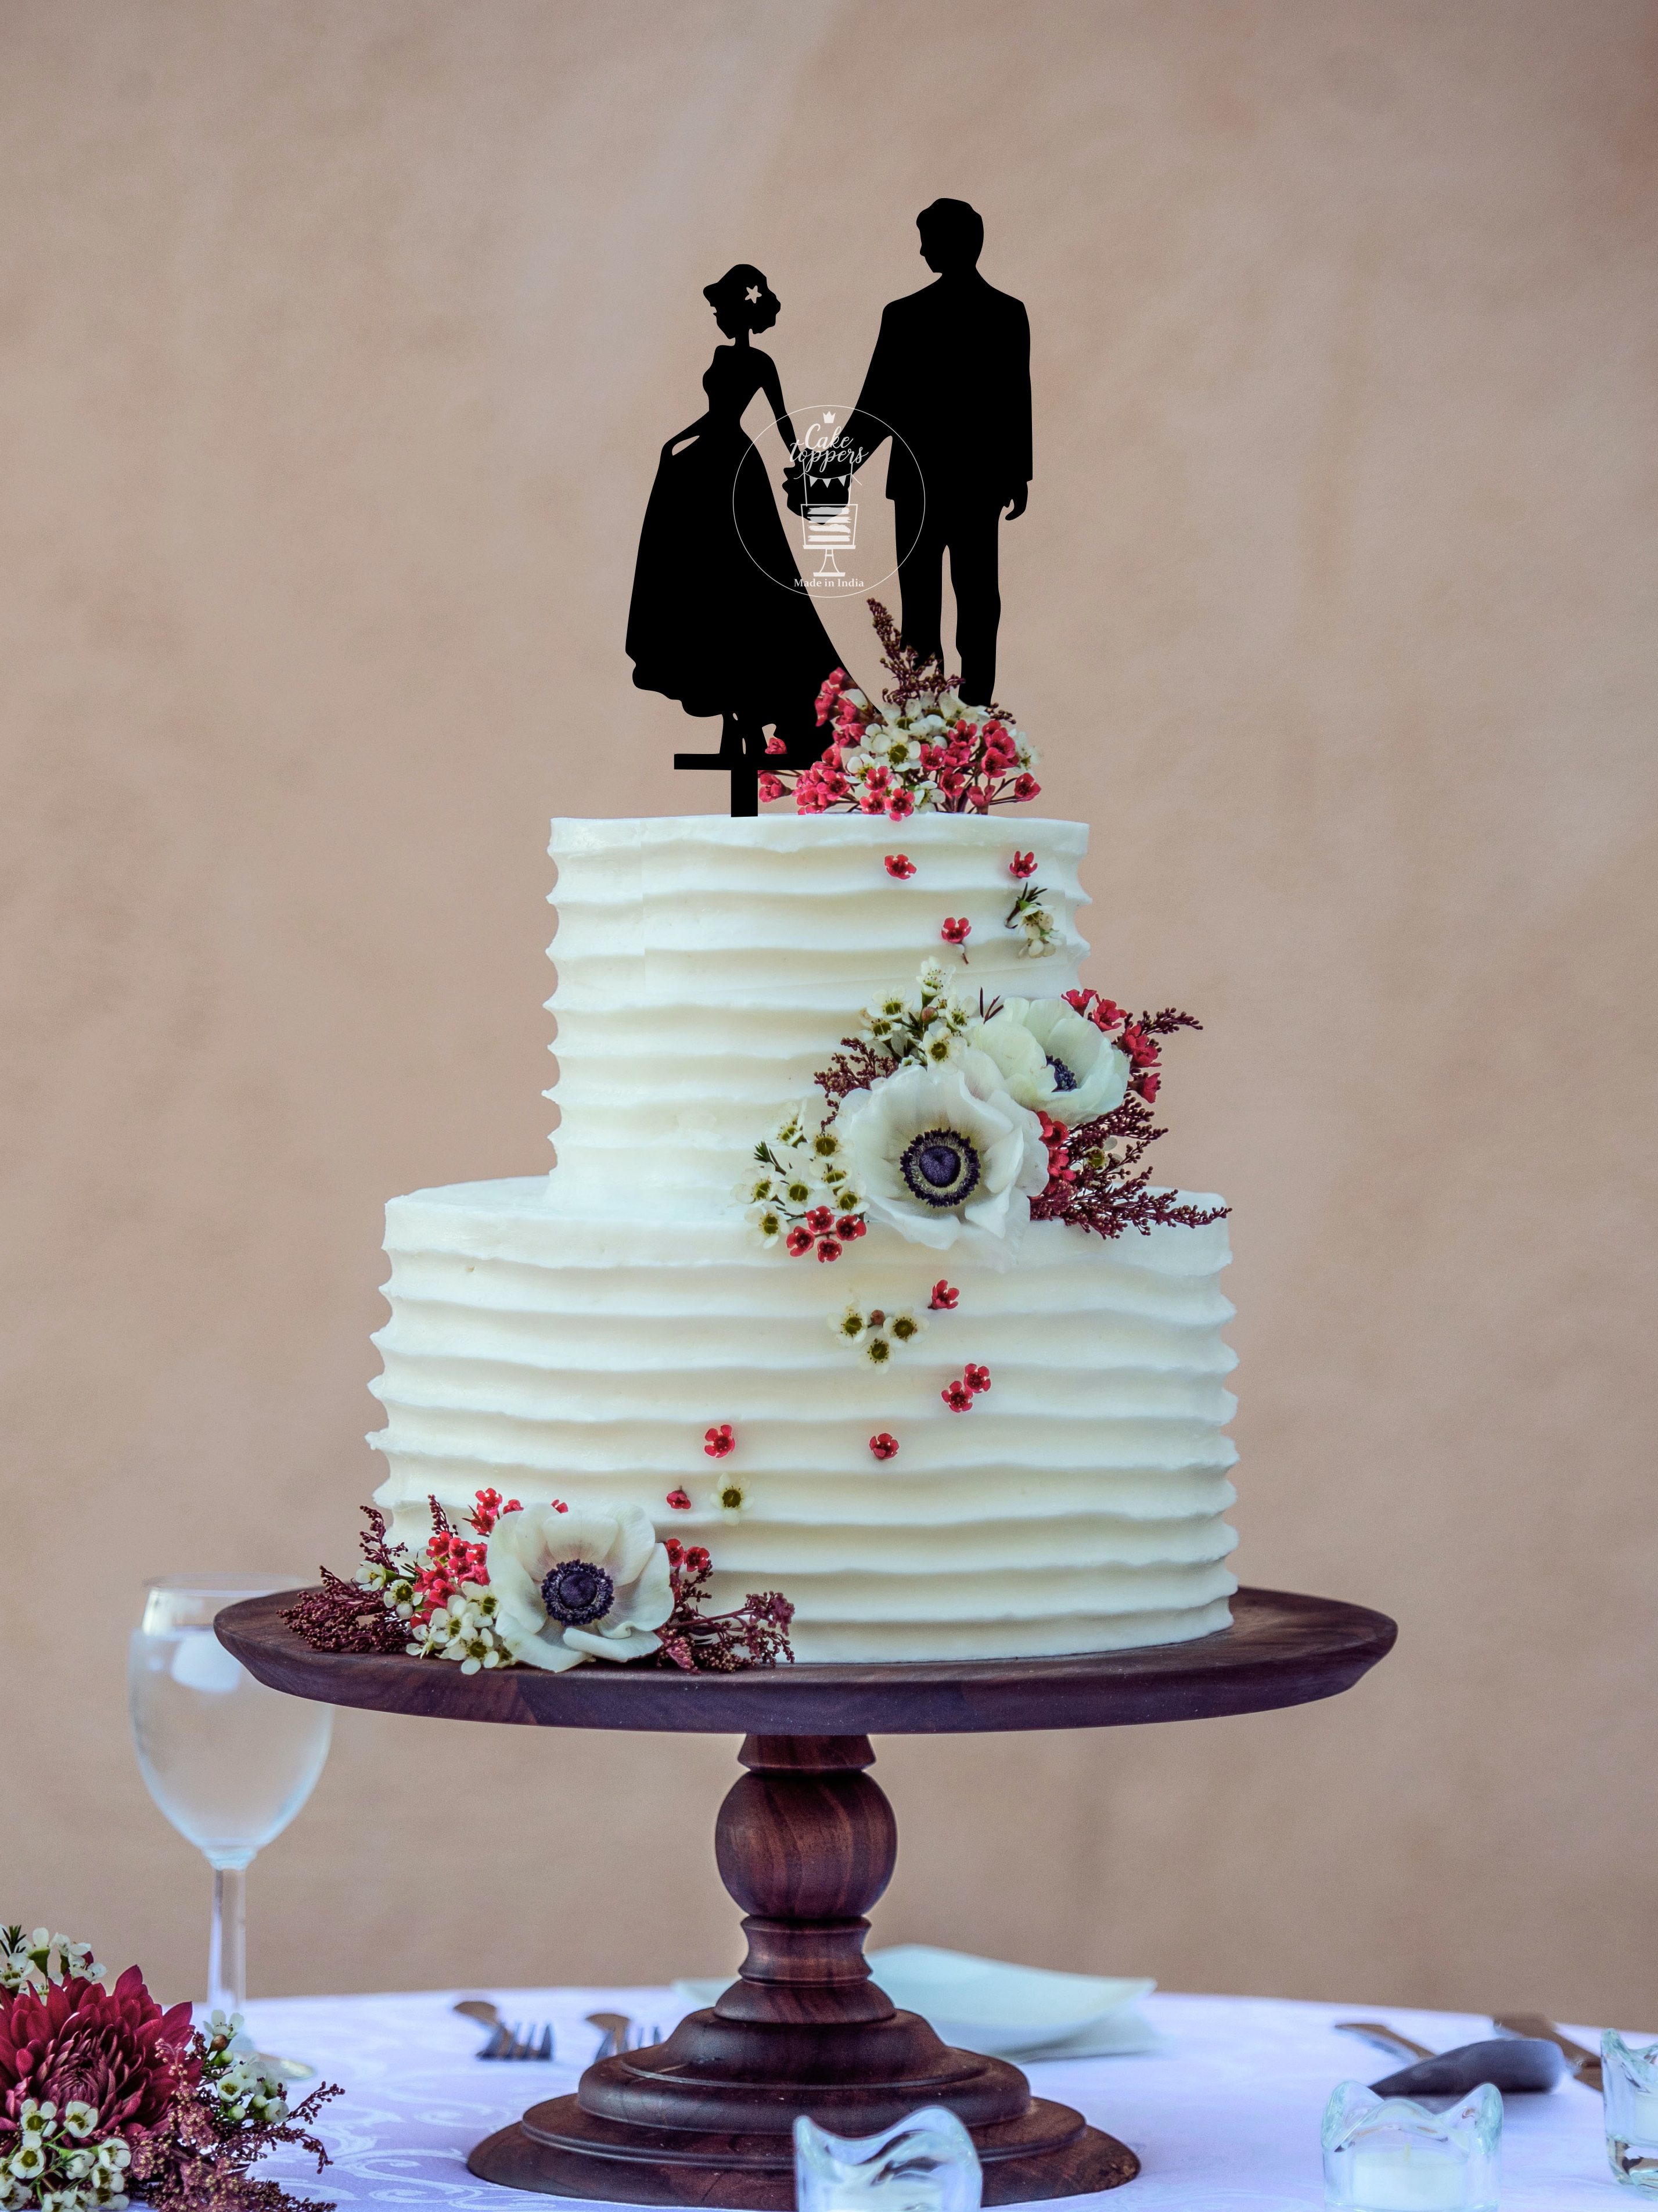 Cute Couple Wedding Cake/ Engagement Cake 65 - Cake Square Chennai | Cake  Shop in Chennai